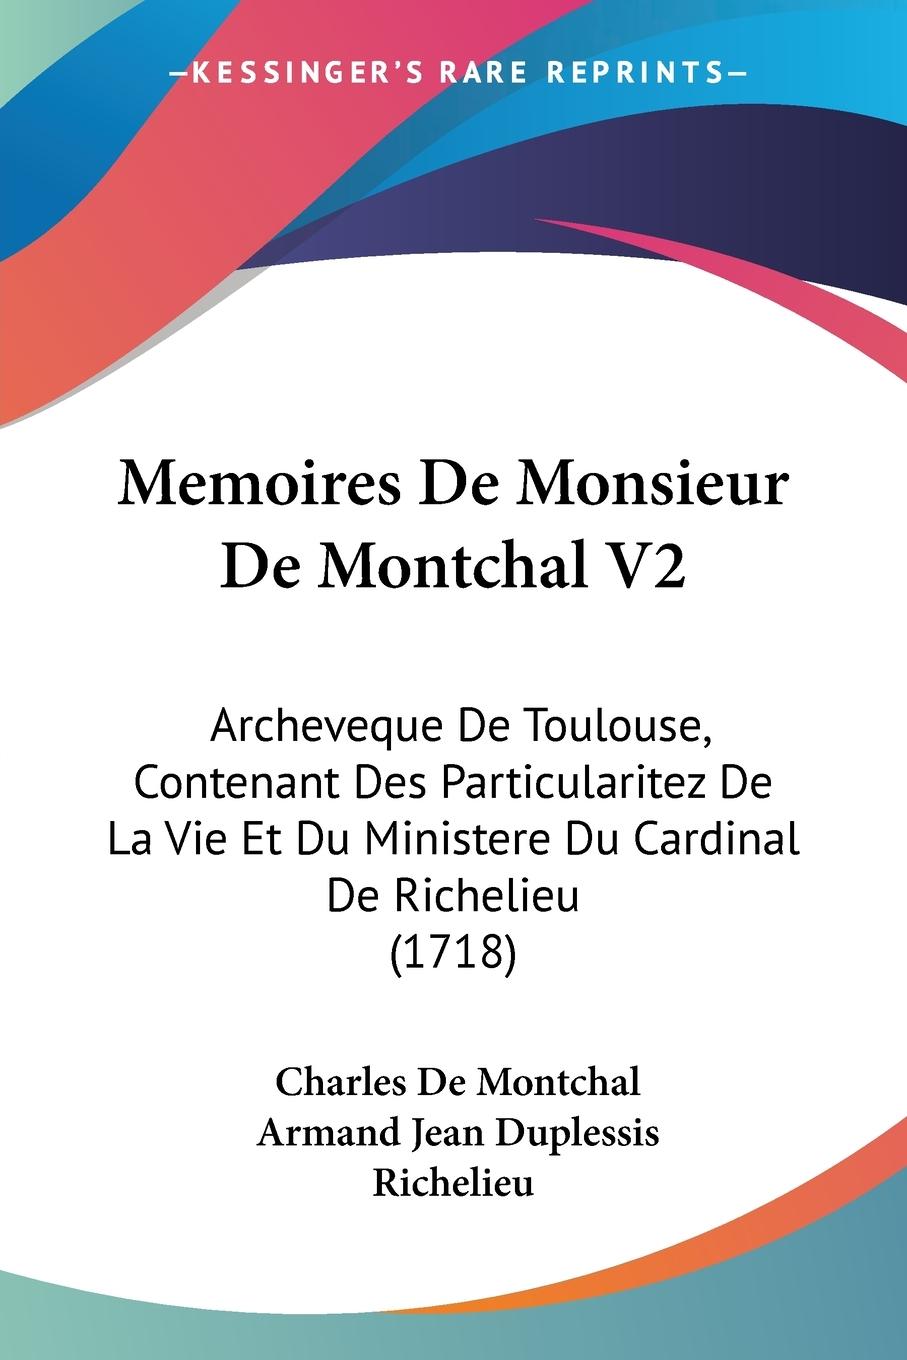 Memoires De Monsieur De Montchal V2 - Montchal, Charles De Richelieu, Armand Jean Duplessis